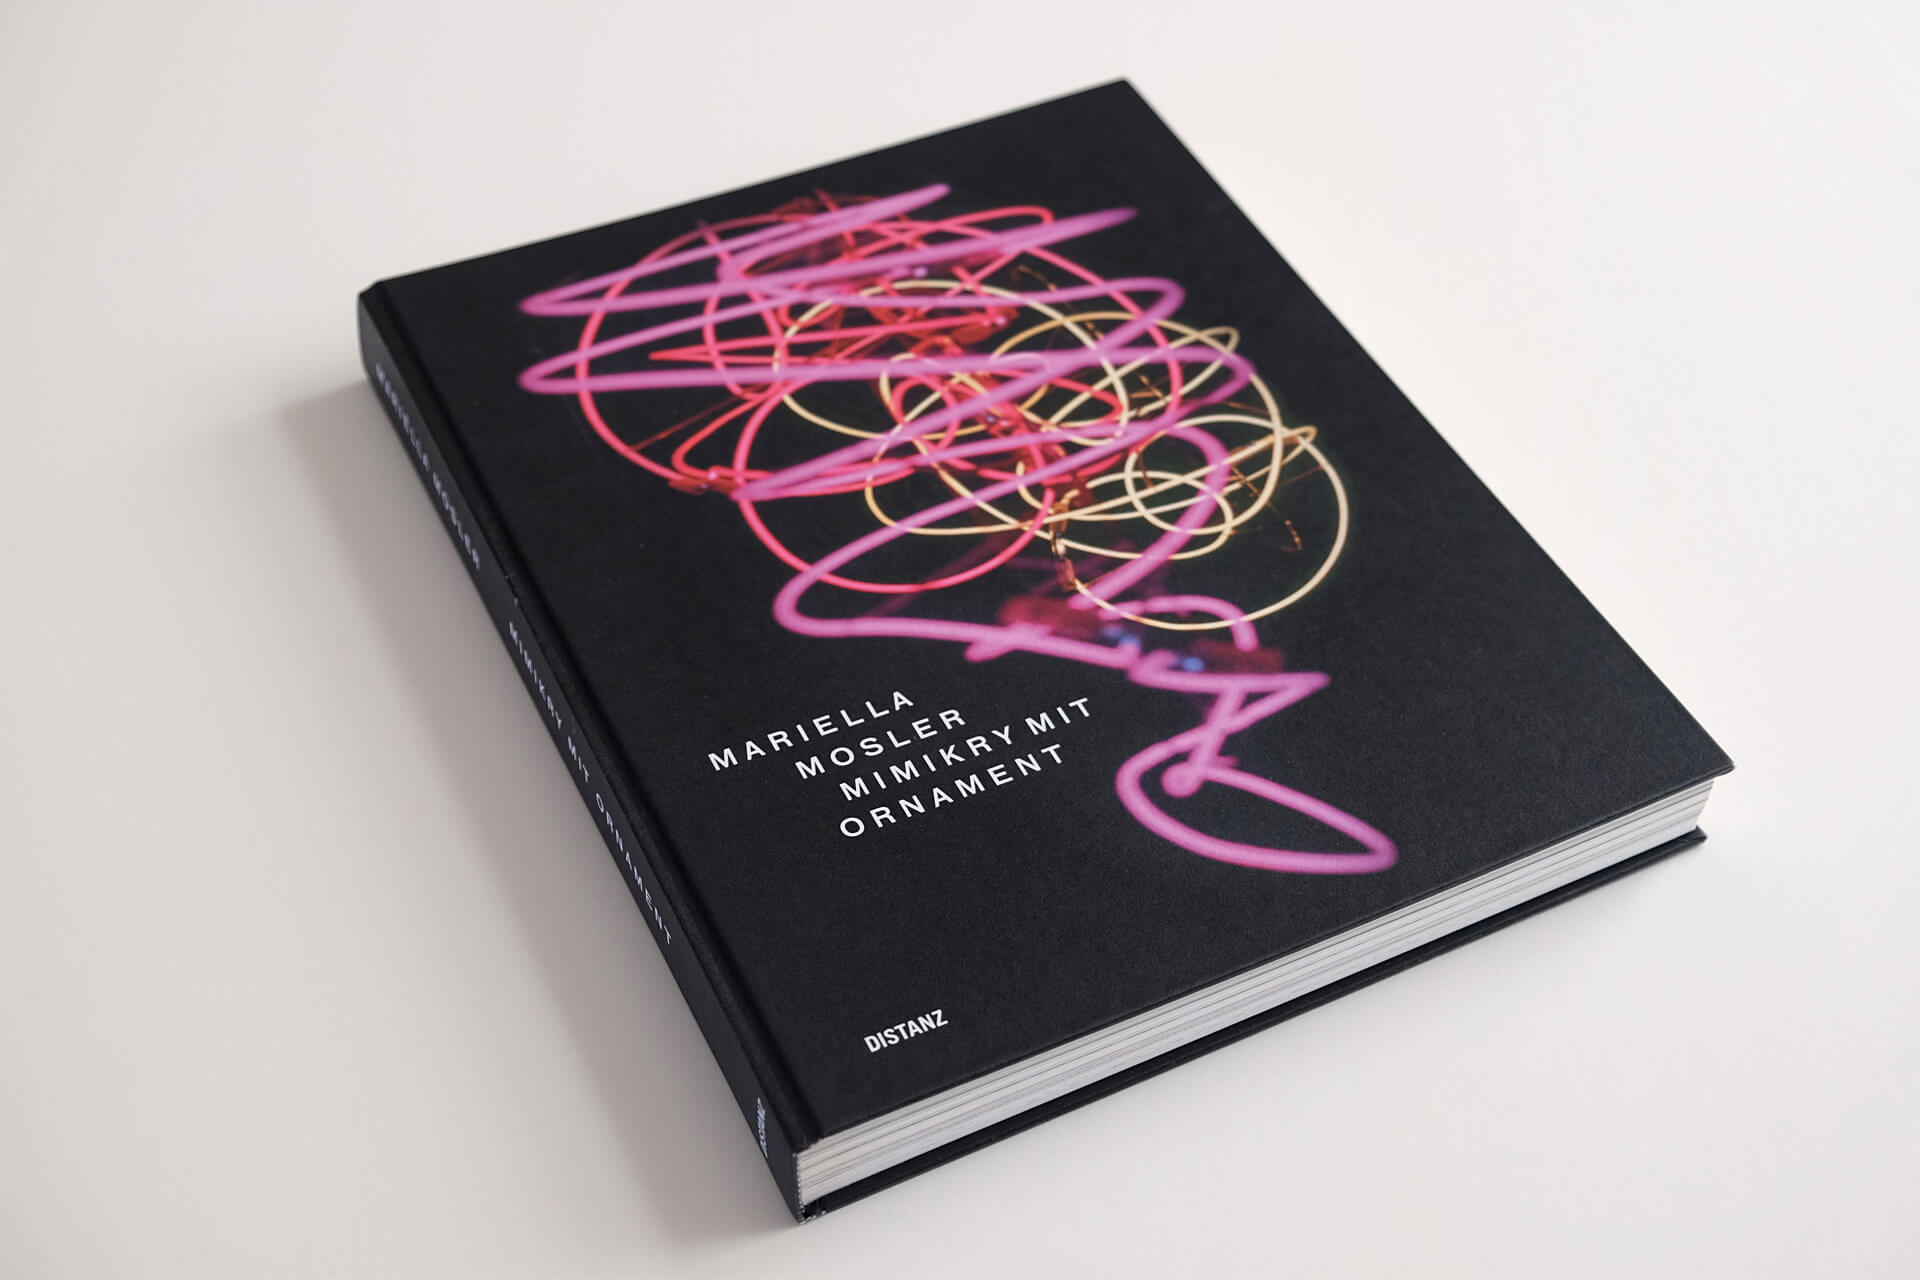 Fotografie des Kunstkatalogs „Mimikry mit Ornament“ für Mariella Mosler. Das Cover zeigt ein „Neon“ auf schwarzem Grund